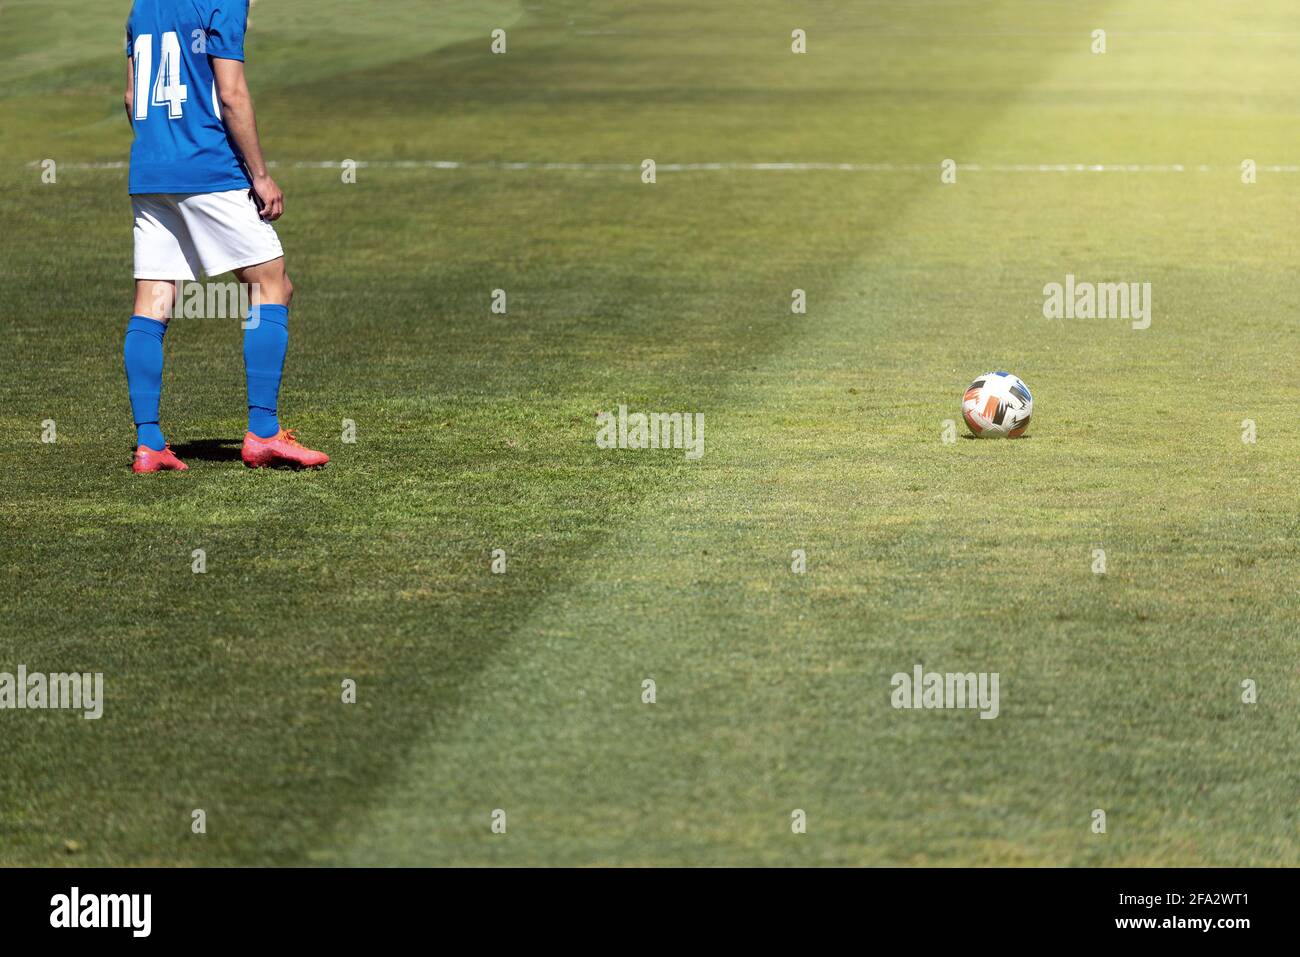 Joueur de football prêt à prendre un coup de pied libre à quelques mètres du ballon sur une pelouse naturelle. Banque D'Images